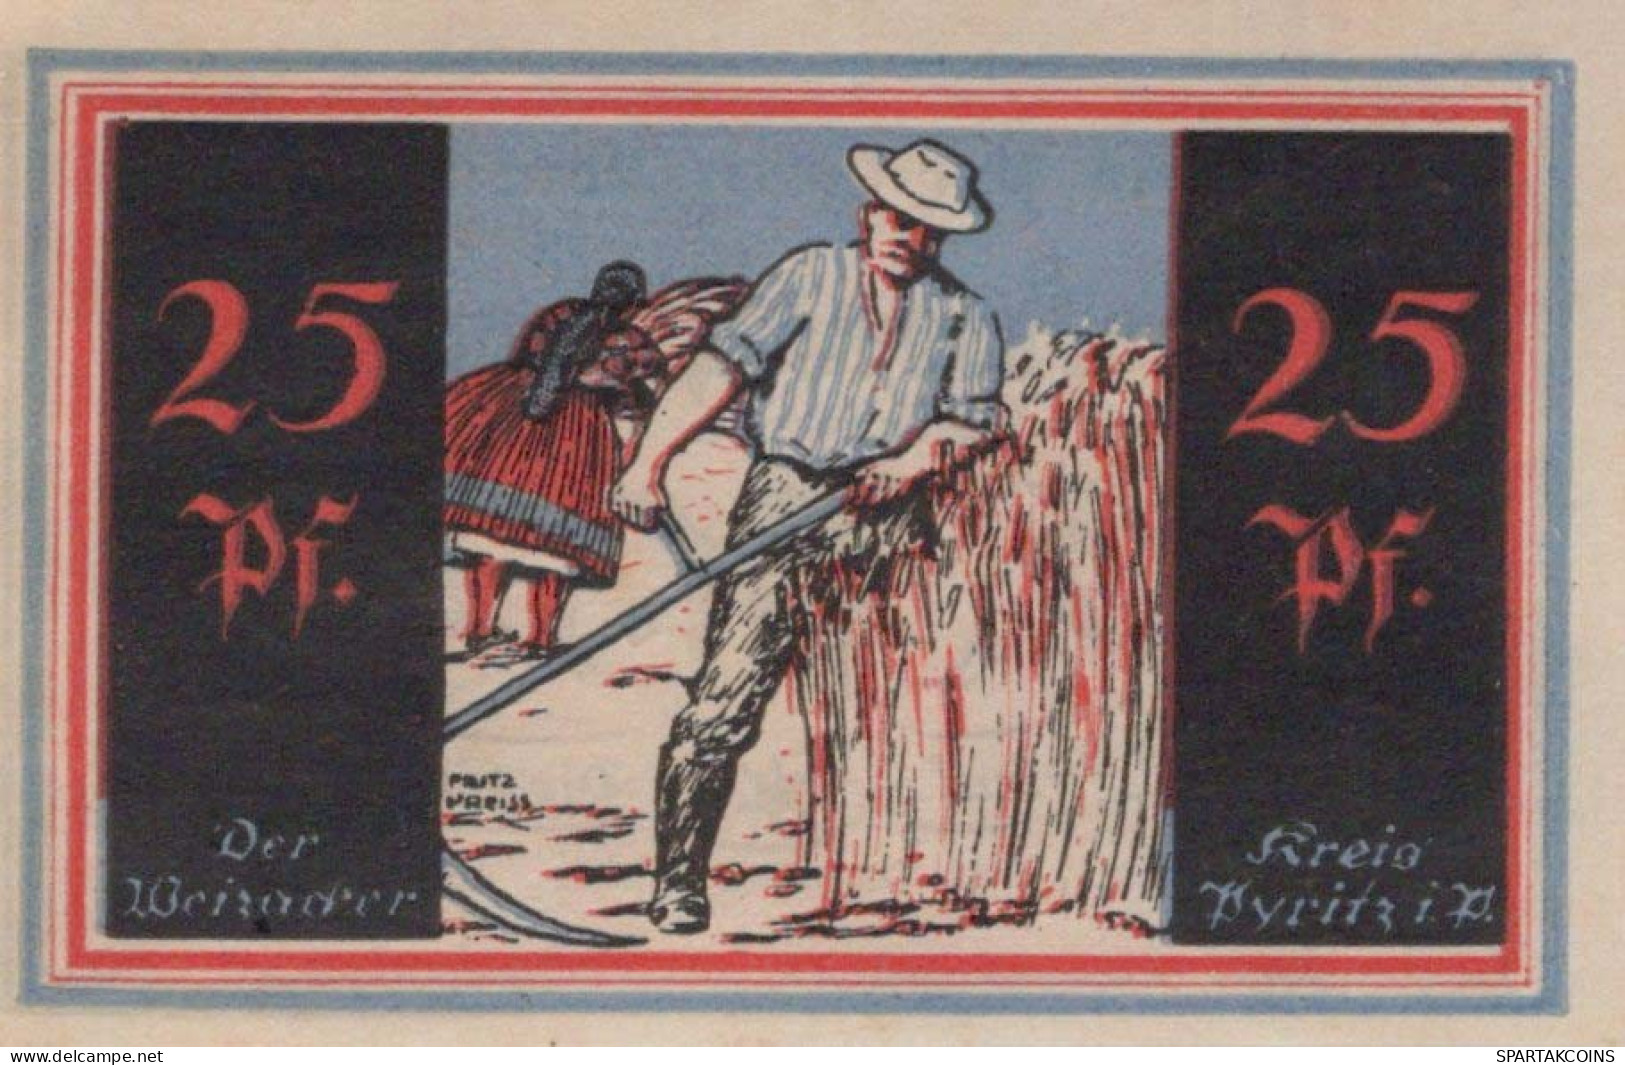 25 PFENNIG 1921 Stadt PYRITZ Pomerania UNC DEUTSCHLAND Notgeld Banknote #PB789 - [11] Local Banknote Issues